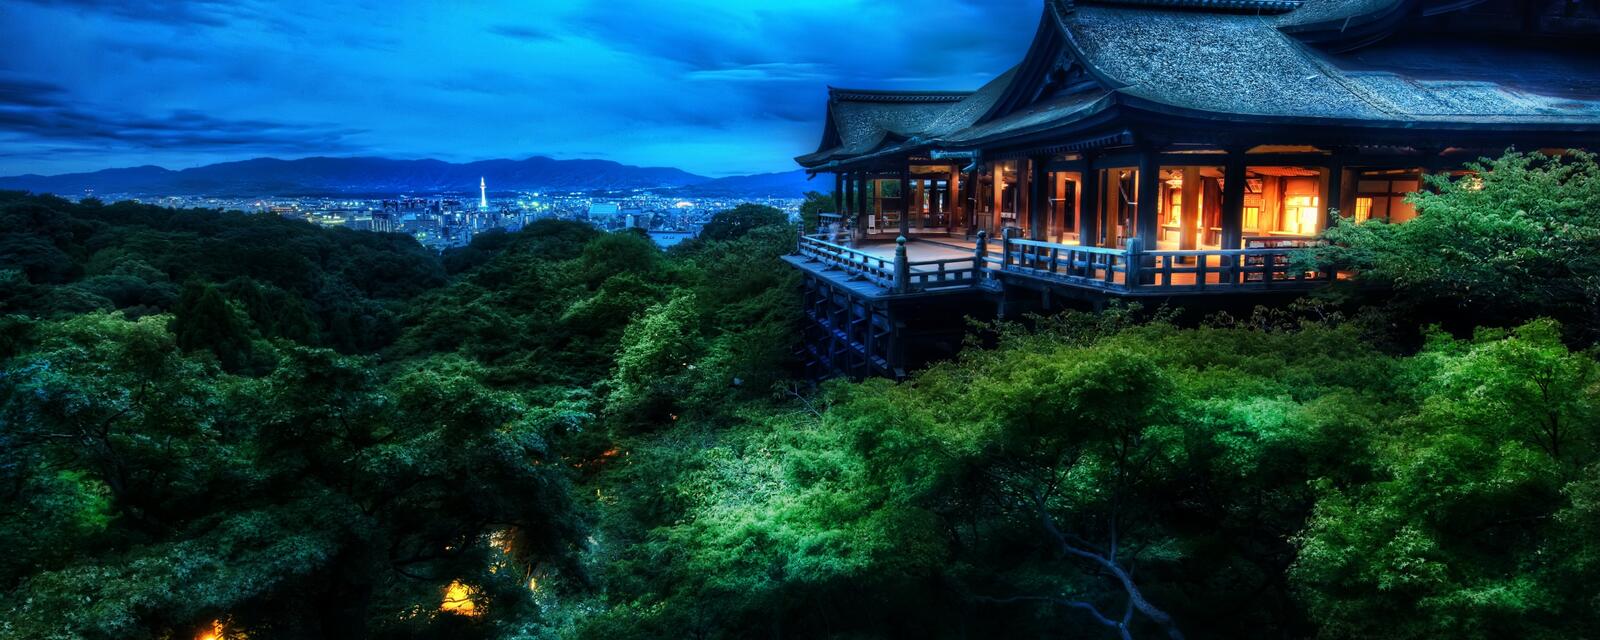 桌面上的壁纸清水寺 京都寺院 日本